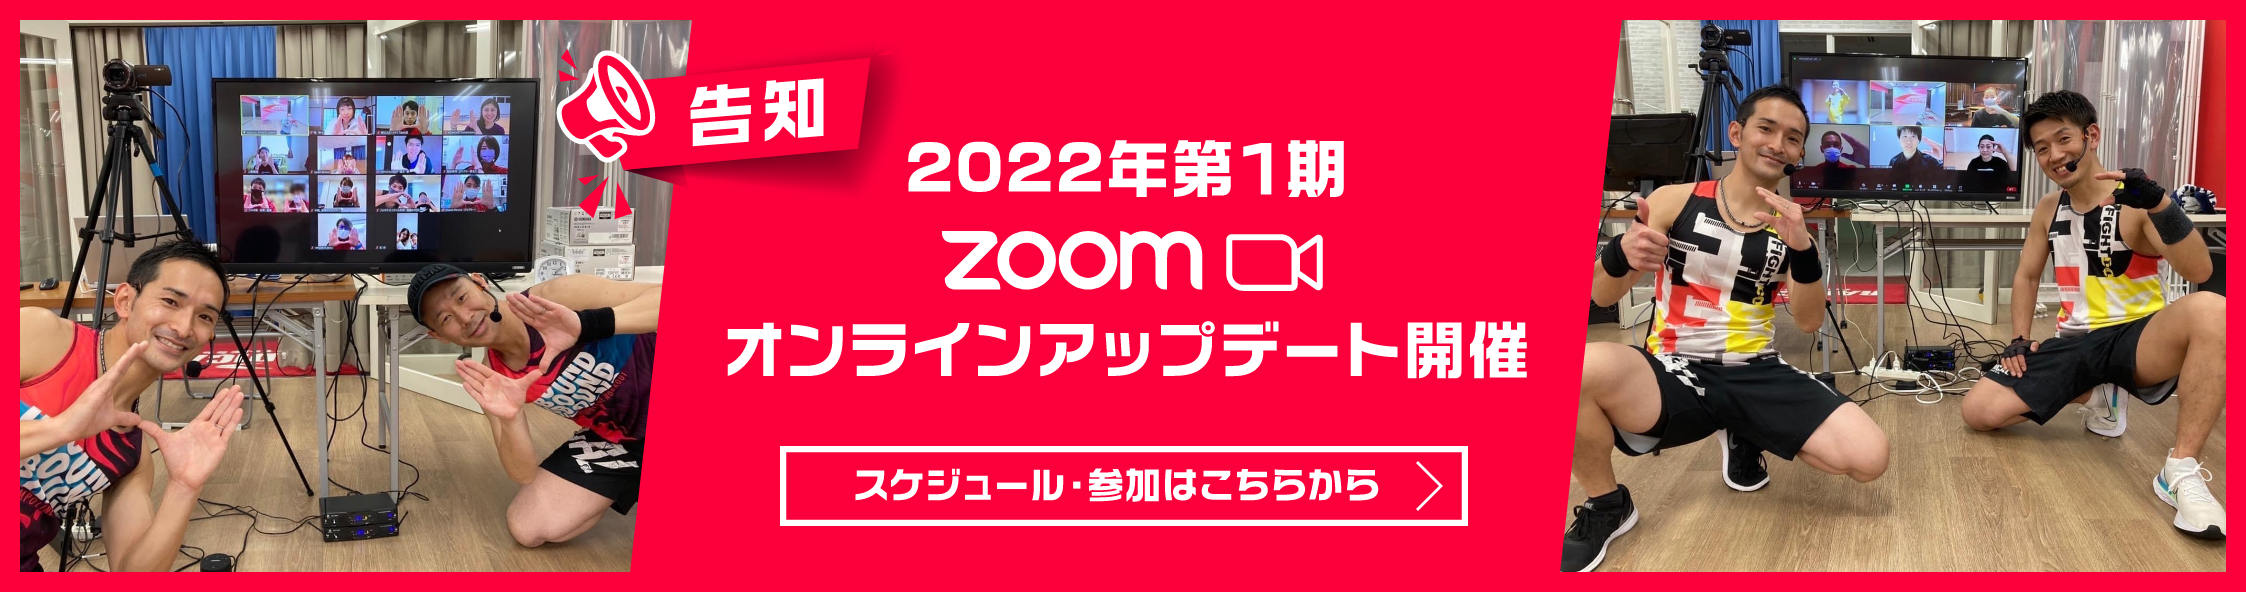 2022年第1期zoom オンラインアップデート開催